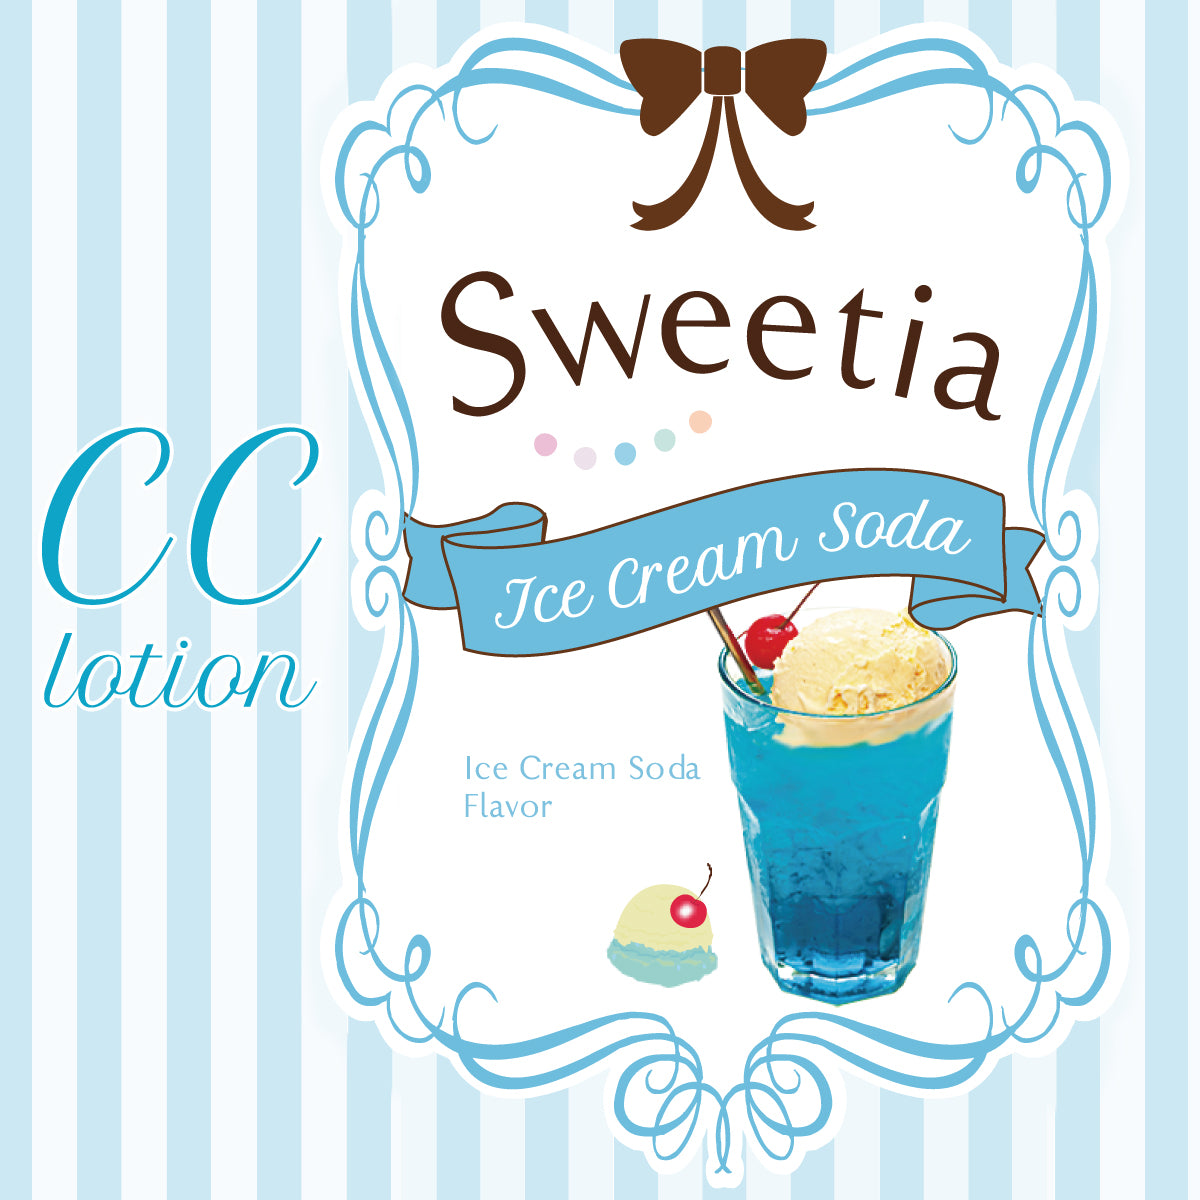 CC lotion Sweetia 180ml (雲呢拿雪糕蘇打味)